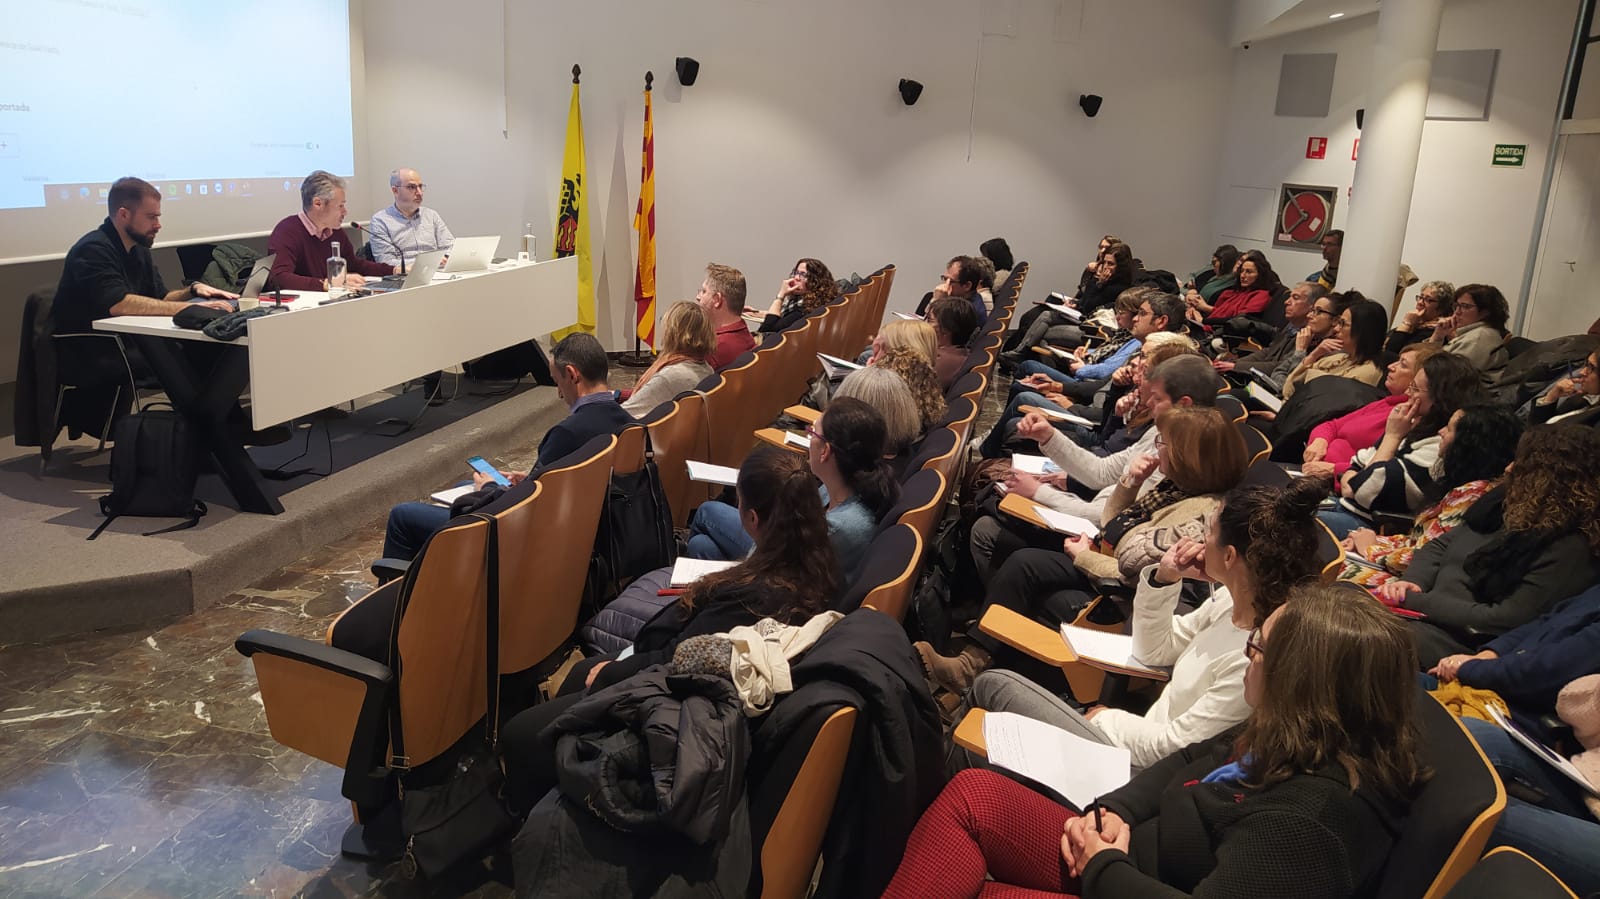 Persone presenti alla sessione di presentazione del case manager presso Pallars Jussà